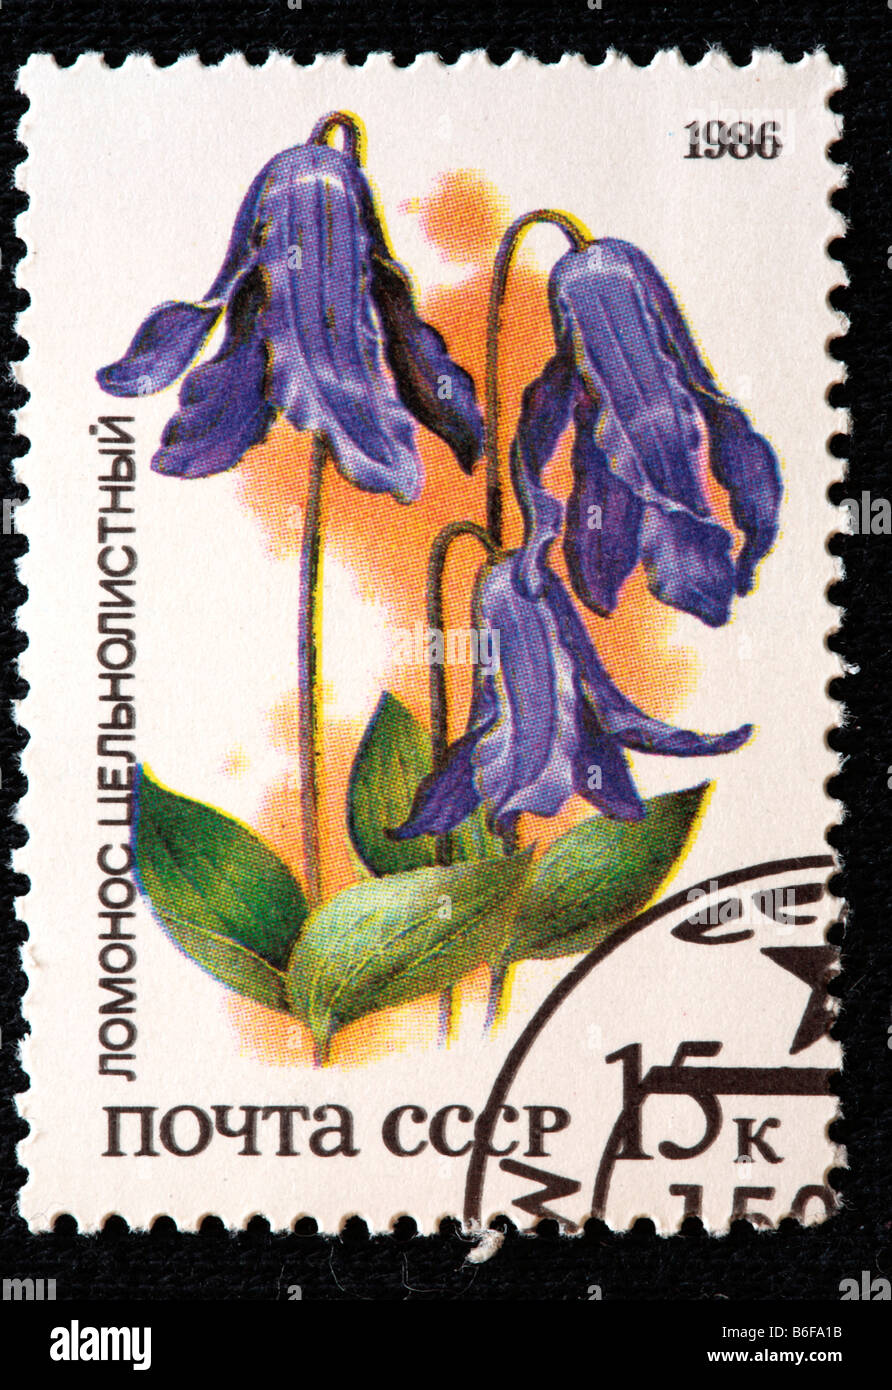 Blue Clematis (Clematis integrifolia), timbre-poste, URSS, 1986 Banque D'Images